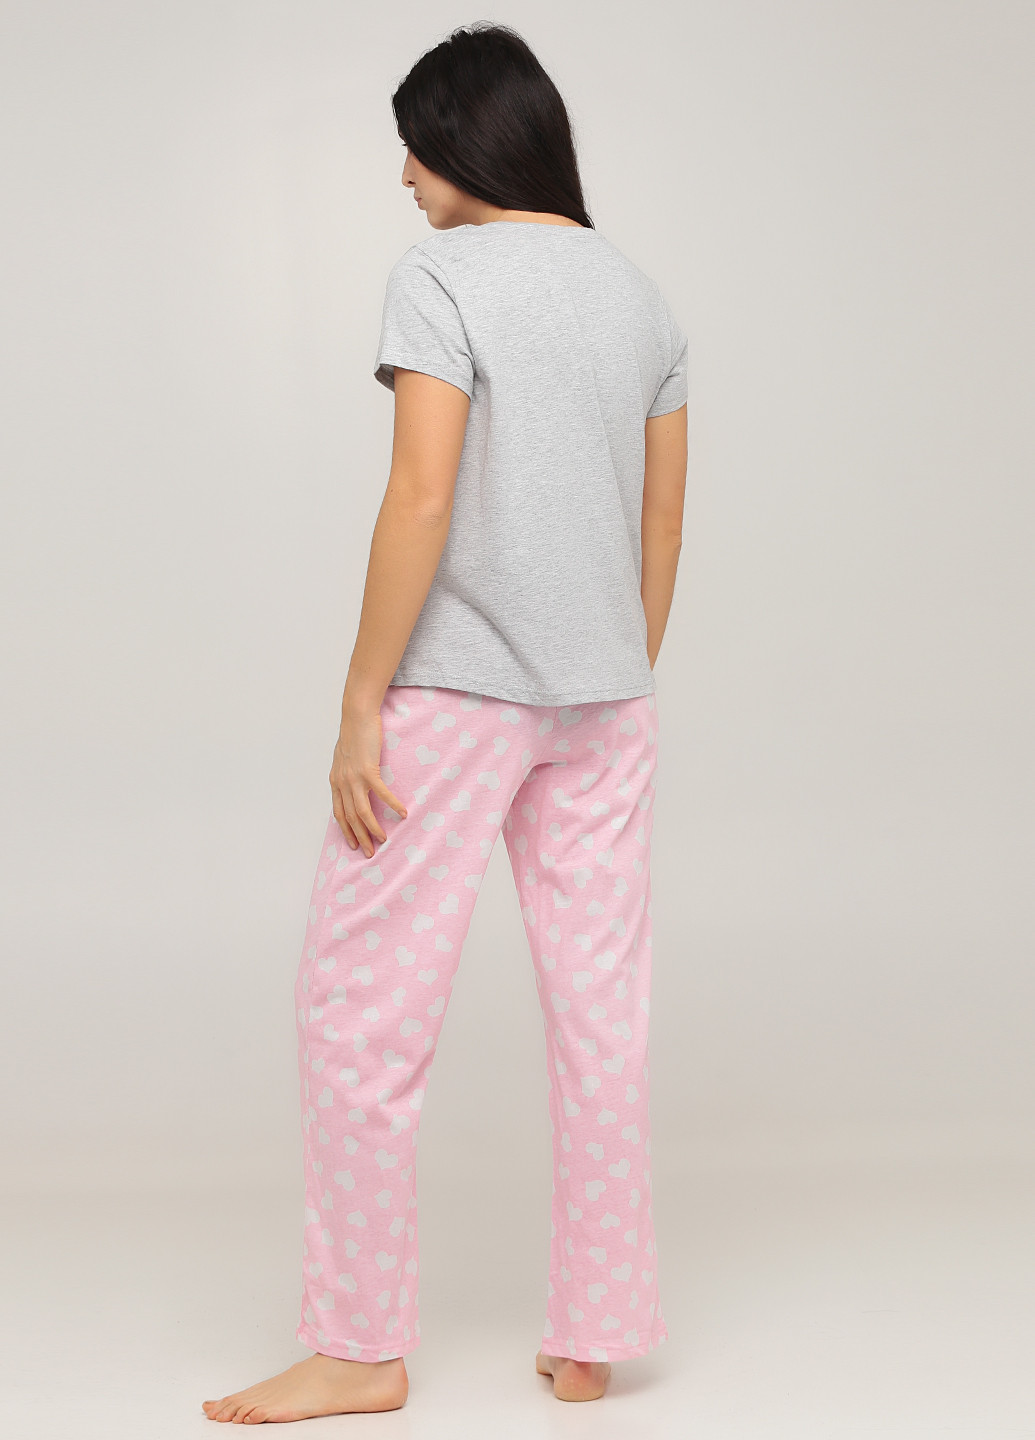 Комбинированная всесезон пижама (футболка, брюки) футболка + брюки Studio